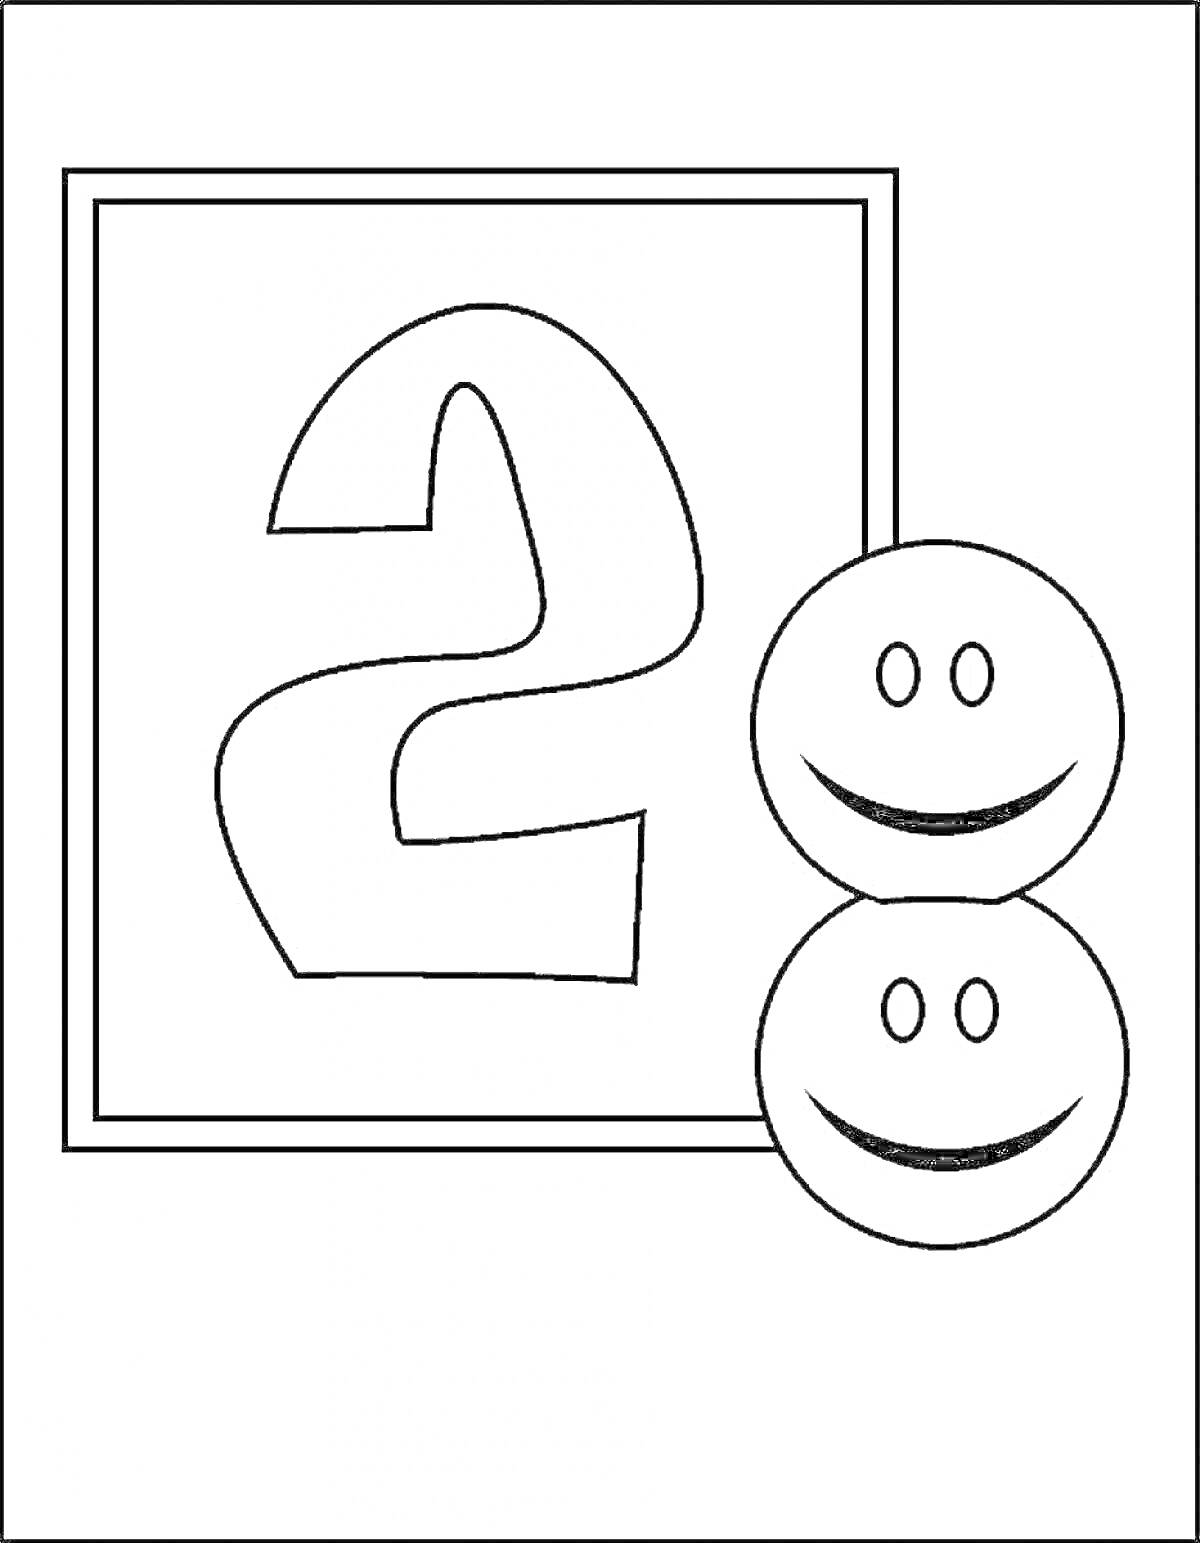 Раскраска Цифра два в квадратной рамке с двумя улыбающимися смайликами